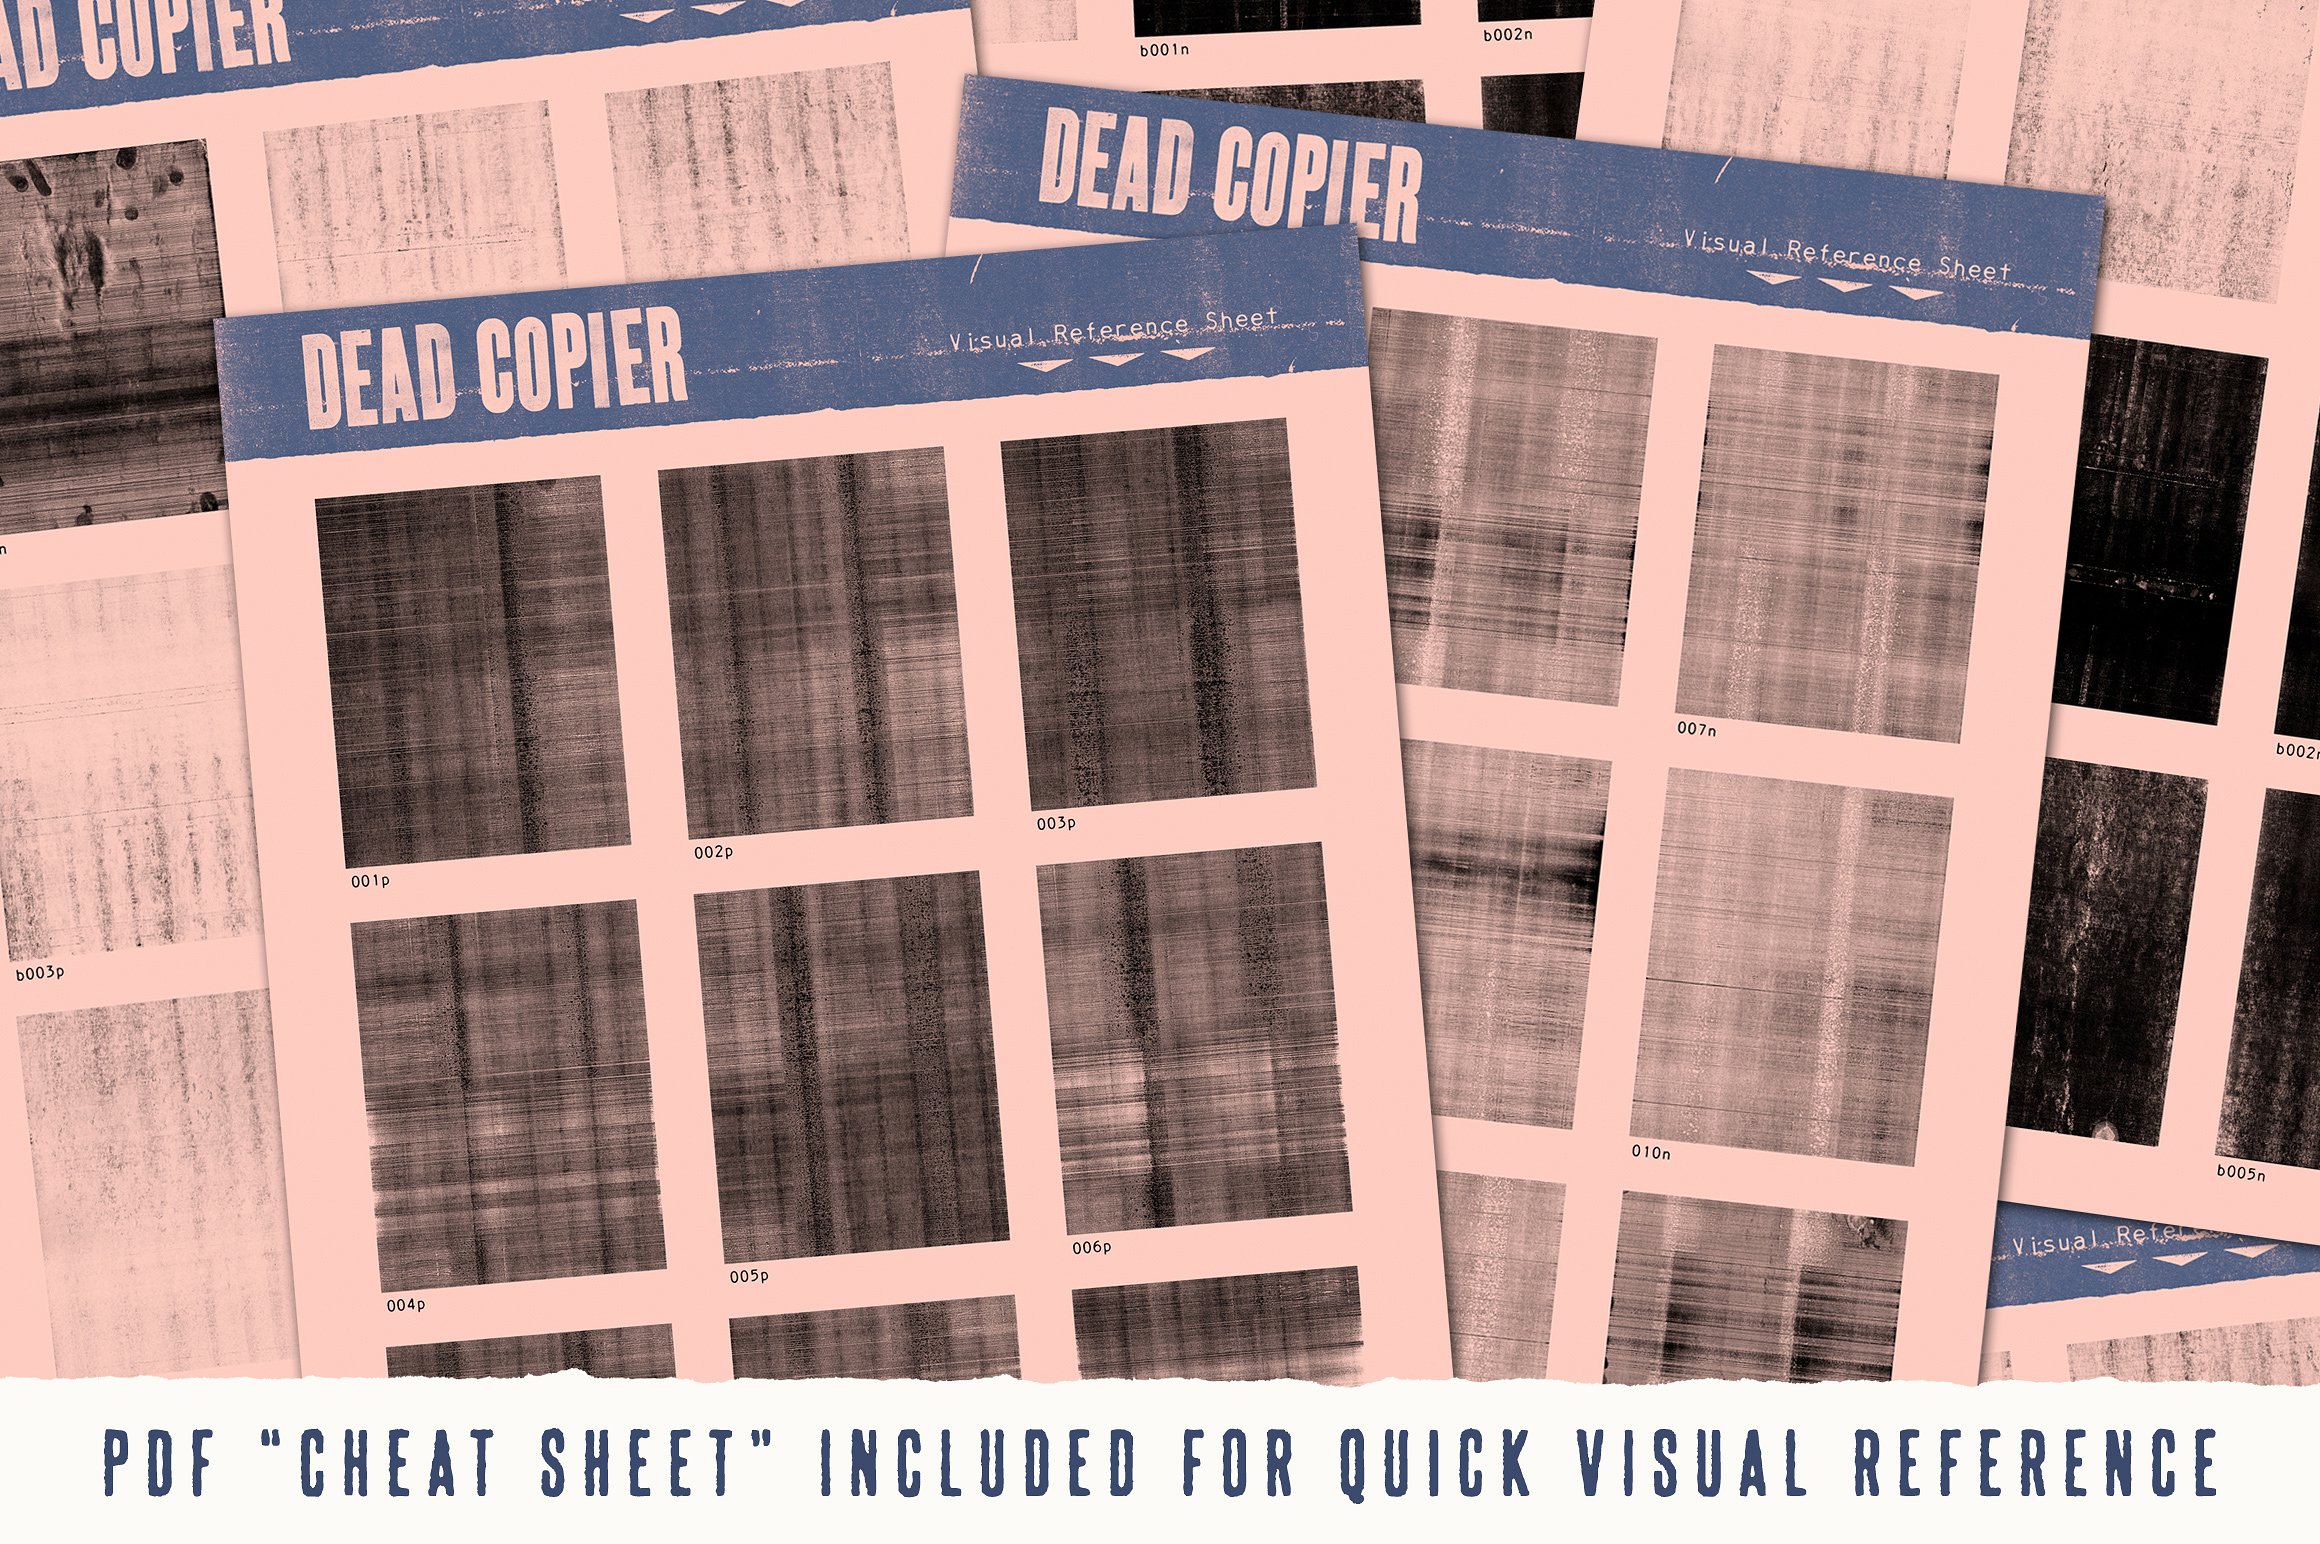 复印机影印纹理素材包 Dead Copier Photocopy Texture Pack插图1